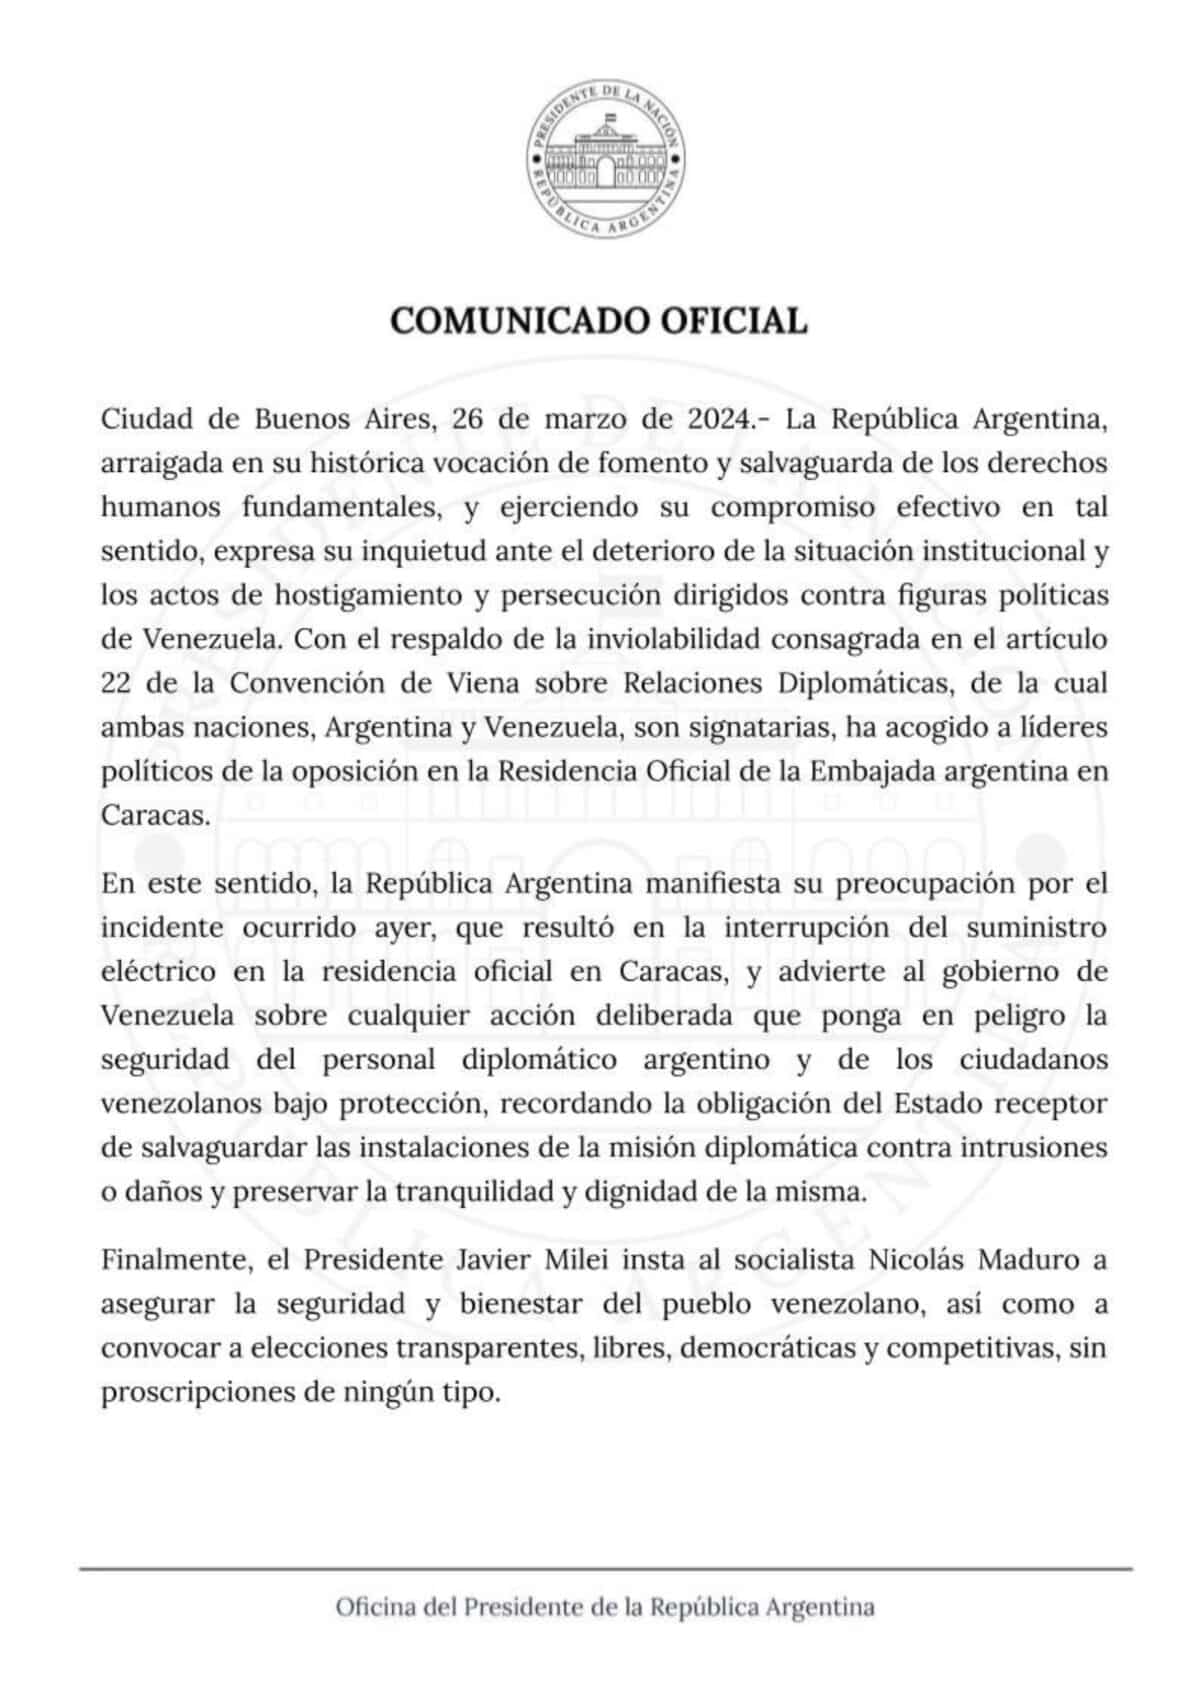 ¿Embajada de Argentina en Venezuela denunció interrupción en el servicio de luz?